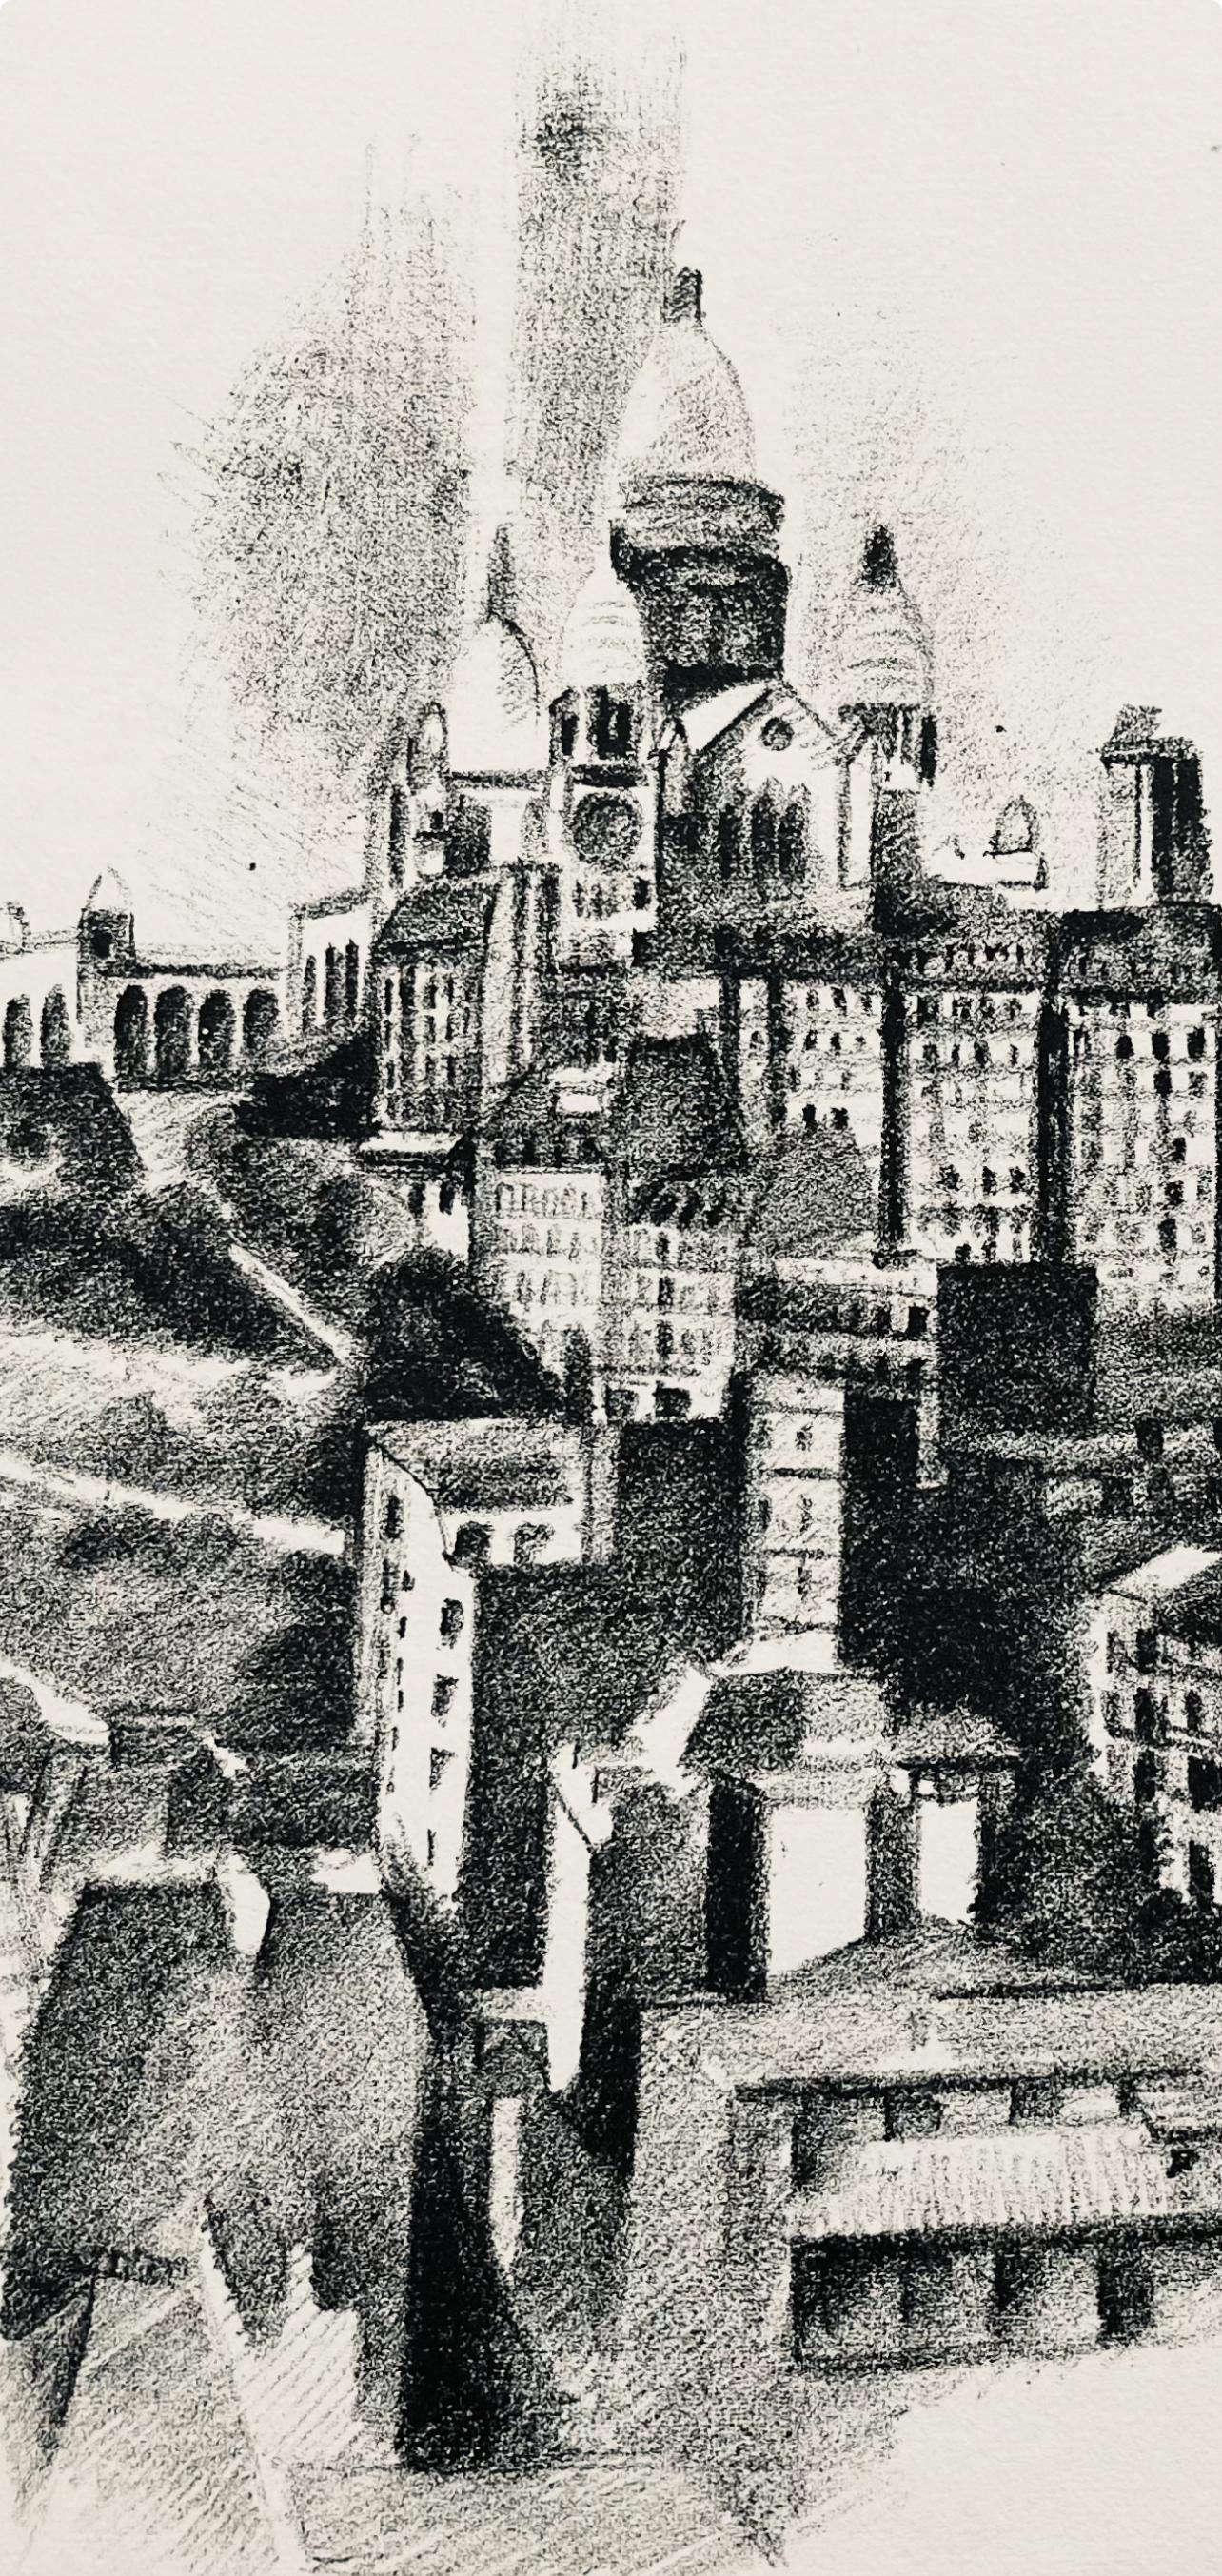 Delaunay, La butte Montmartre et le Sacre-Cœur (H 720-728), Allo! Paris! (nach) – Print von Robert Delaunay